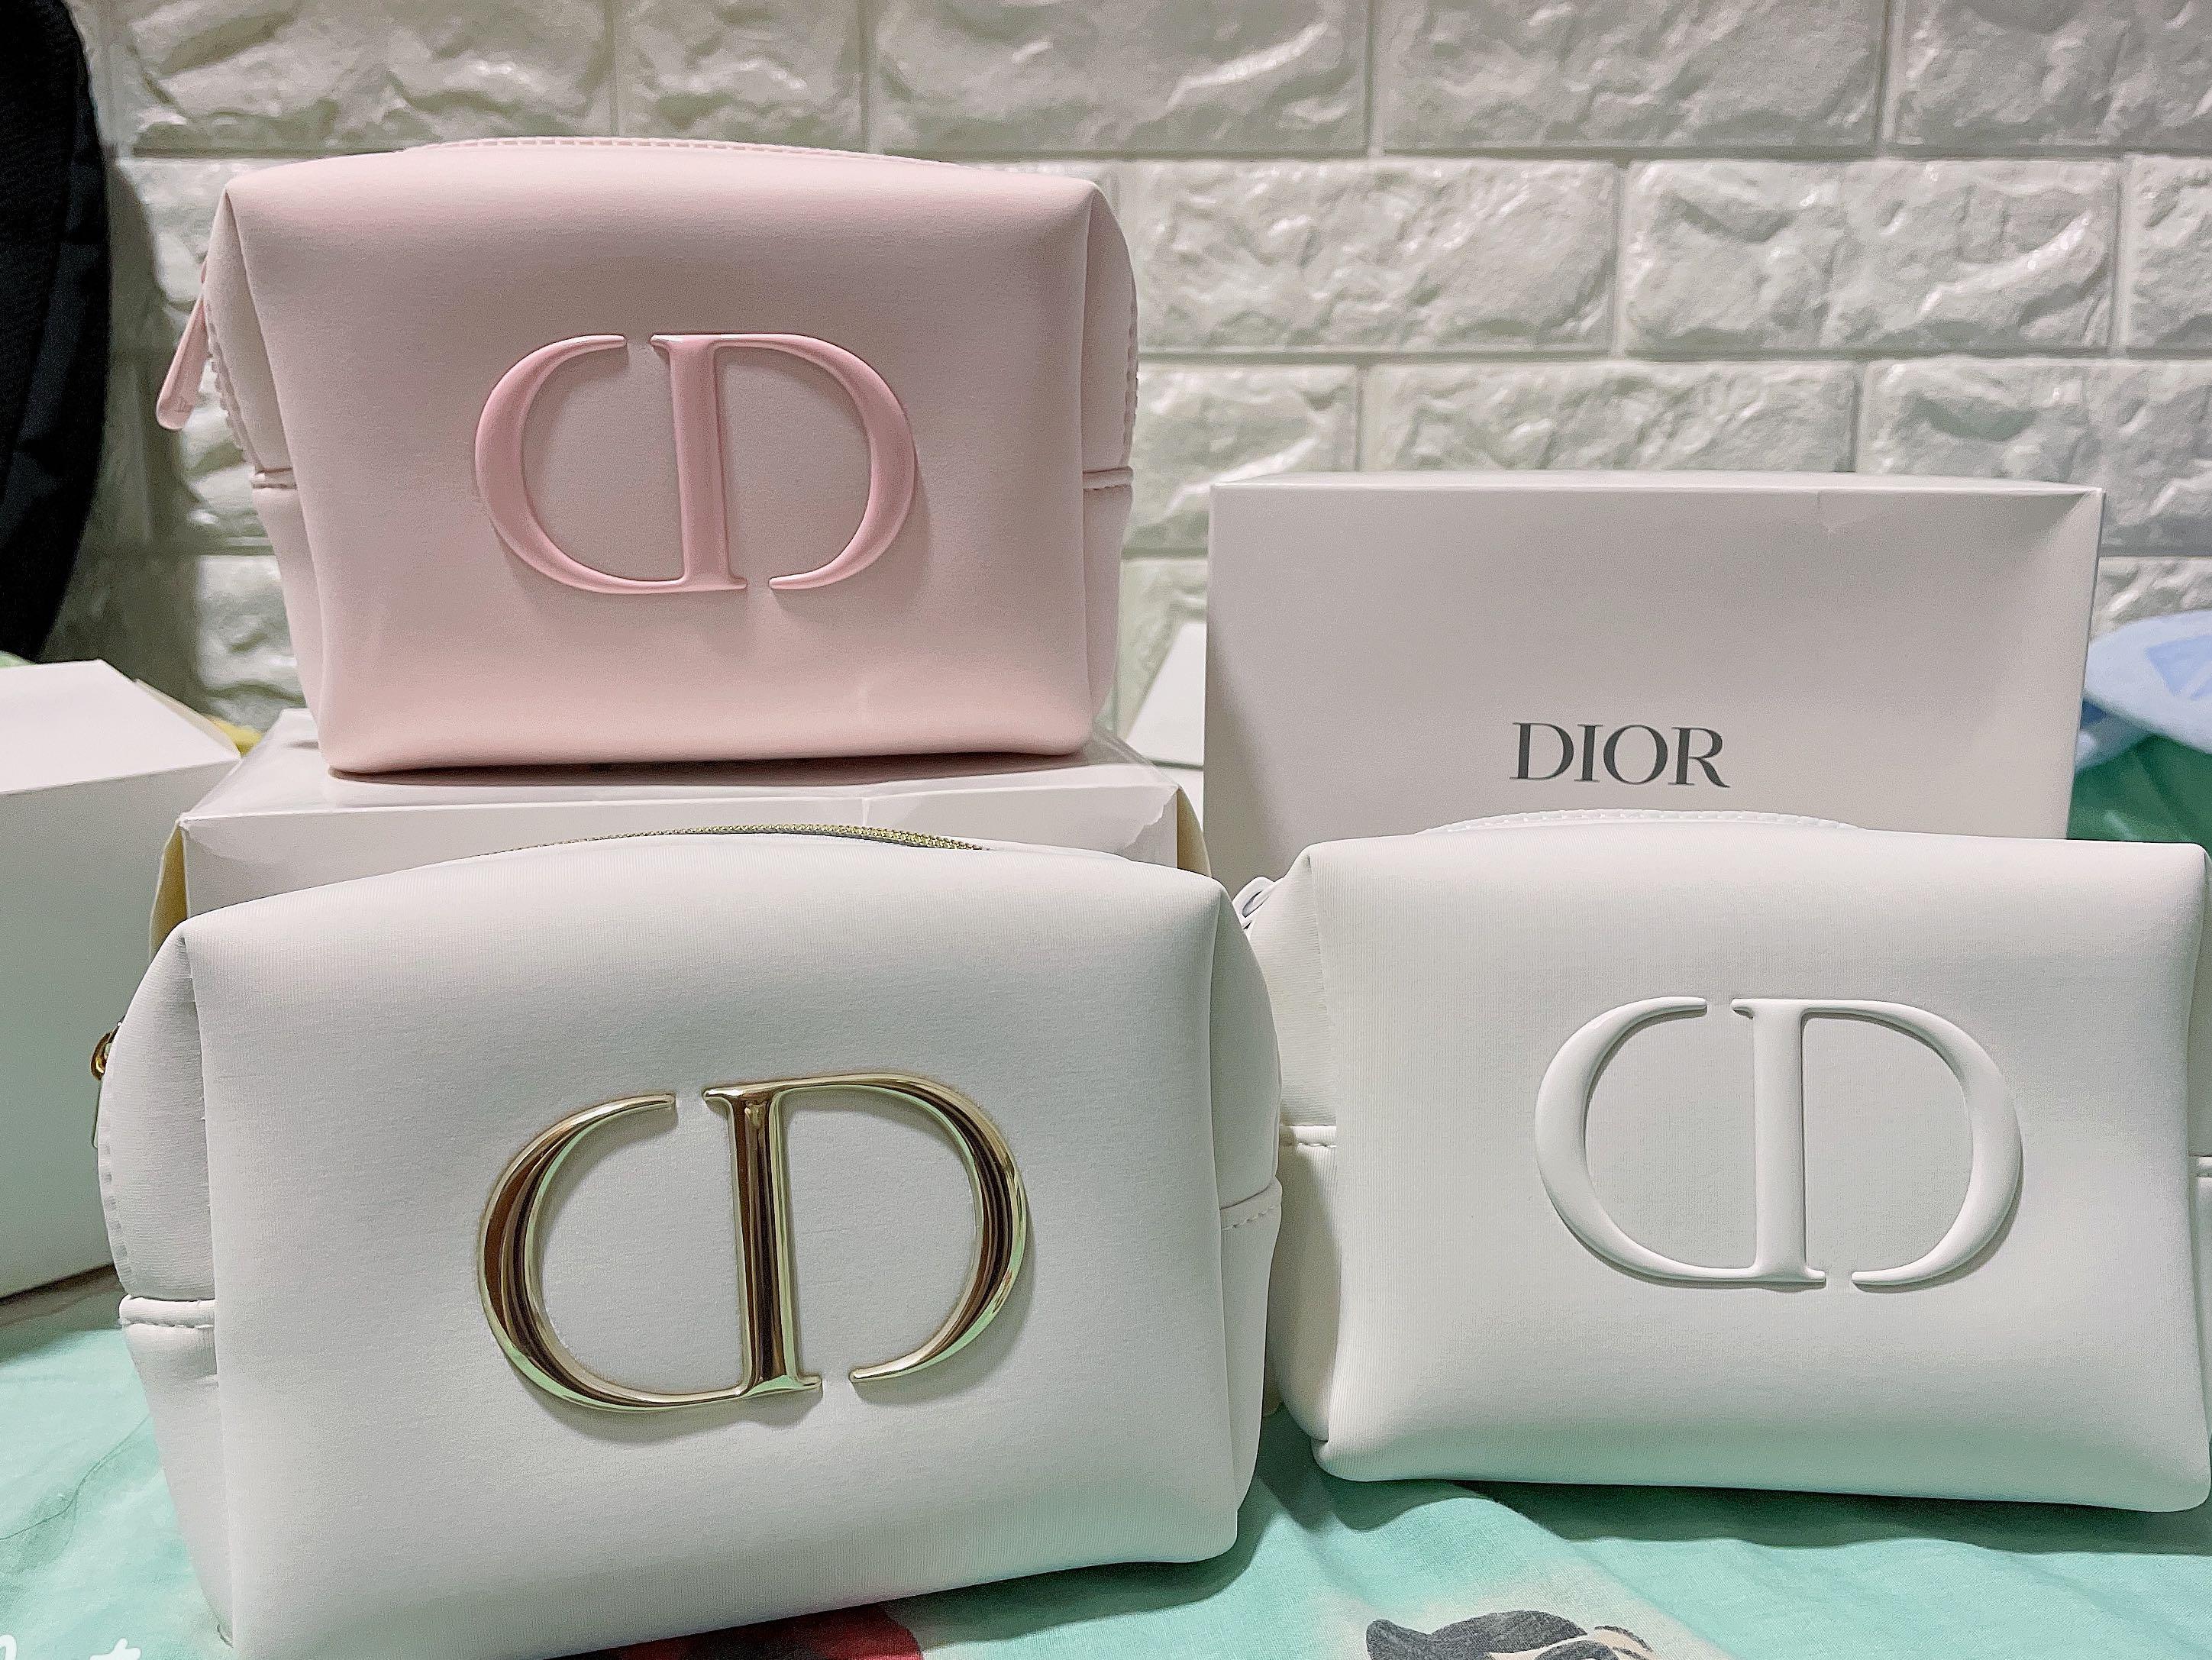 Dior Skincare  Cosmetic w Bag hidalgomoncicom